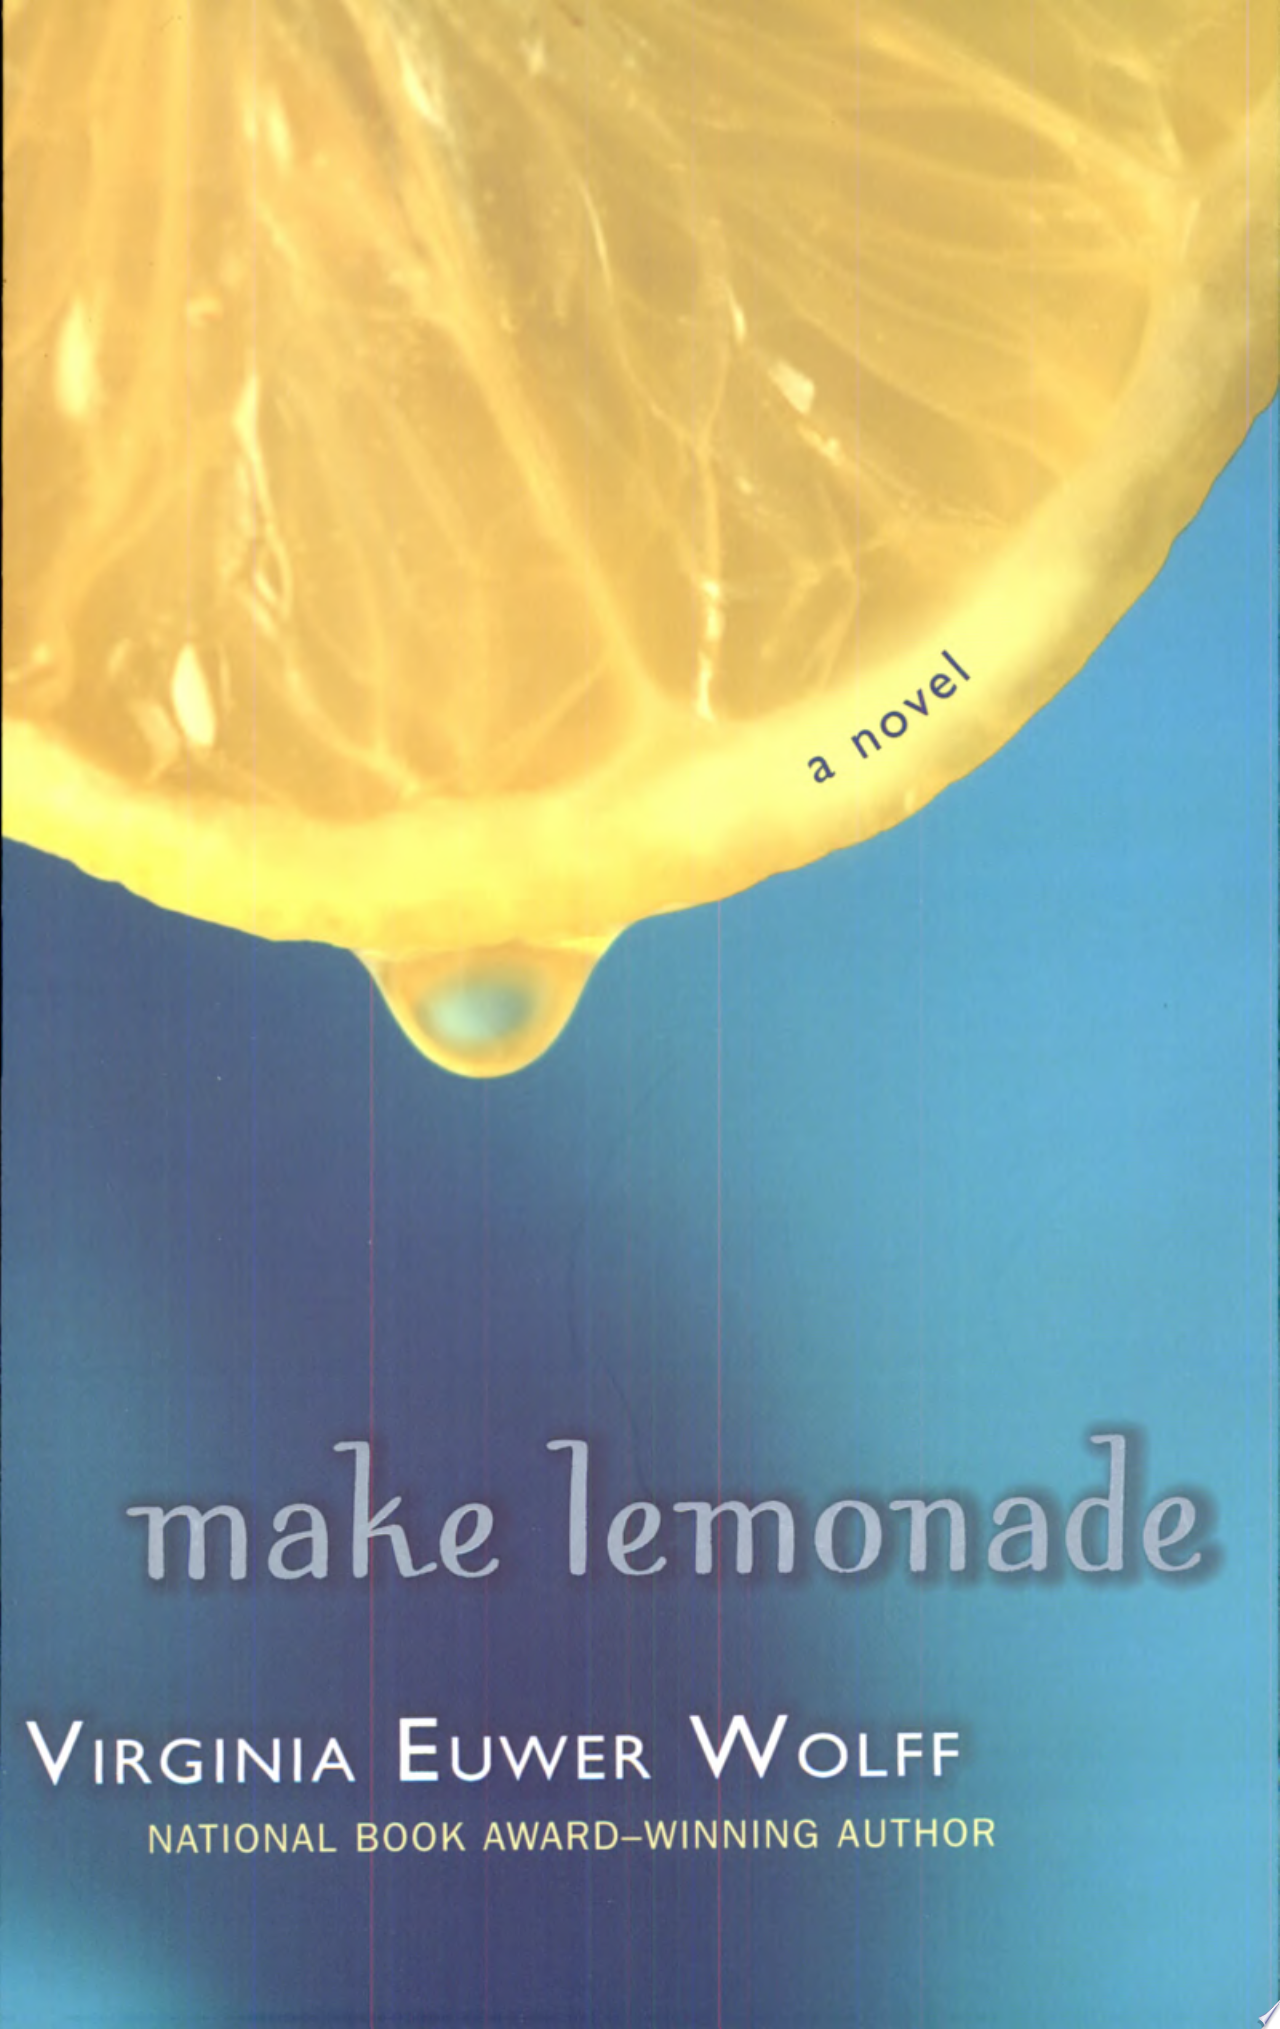 Image for "Make Lemonade"